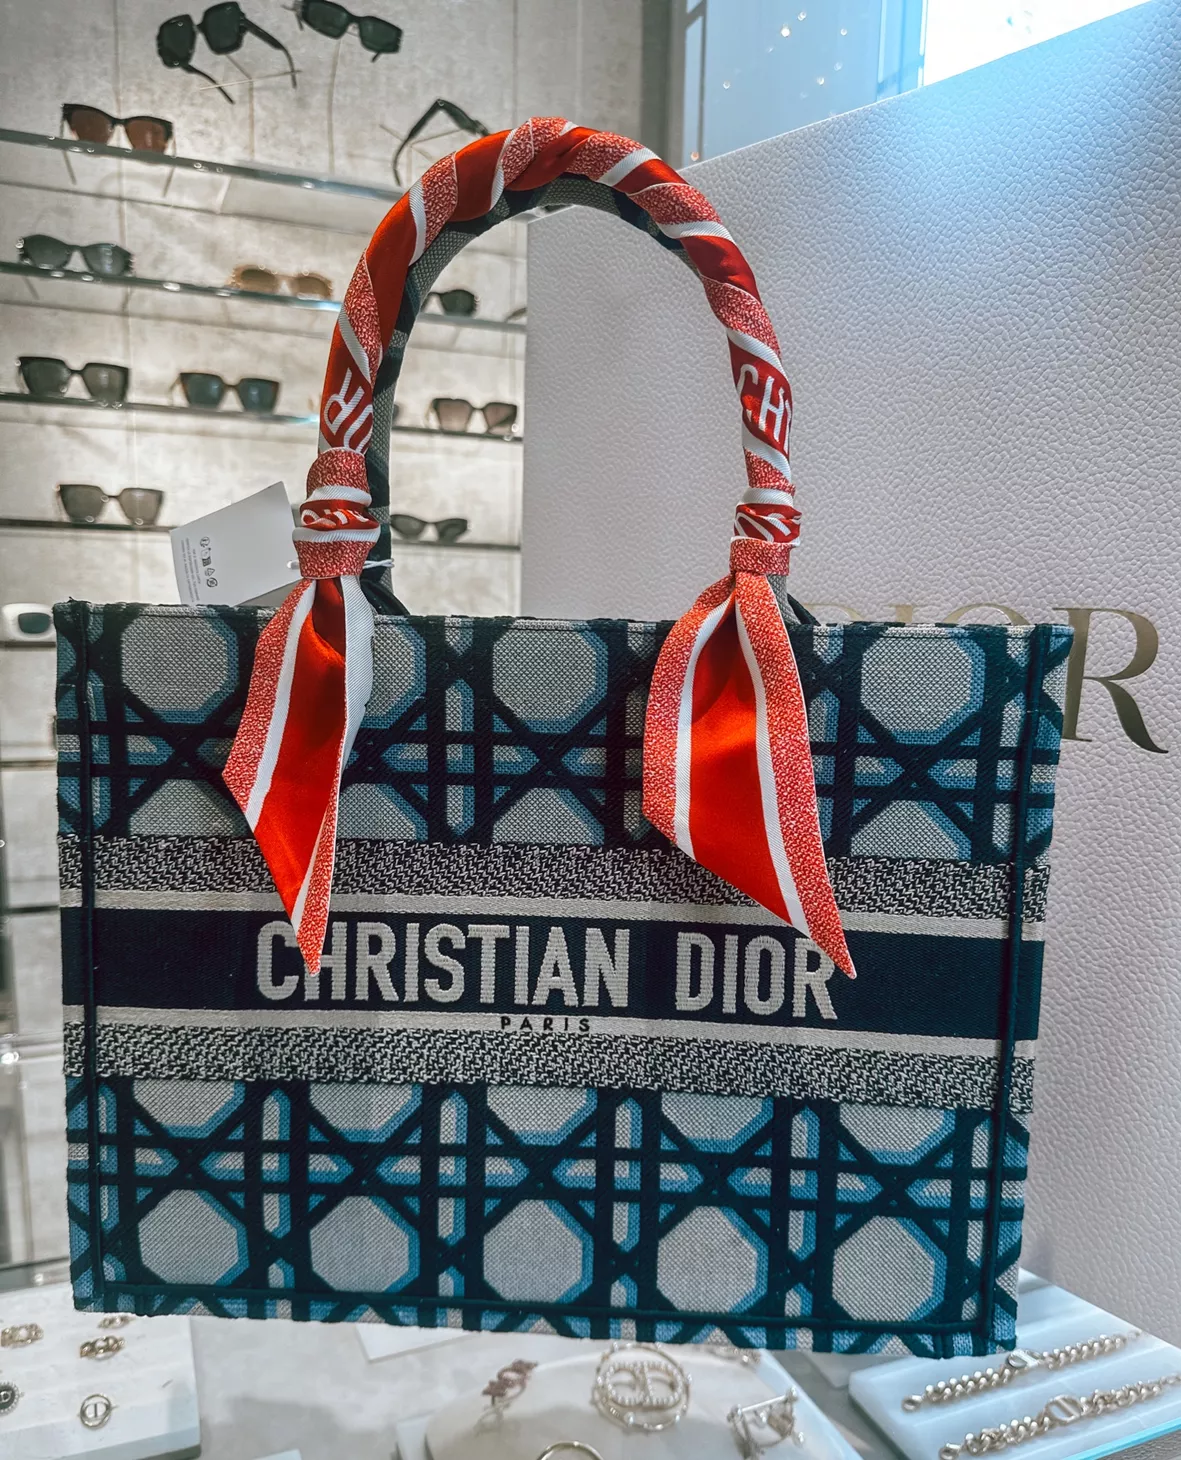 Dior book tote? : r/handbags